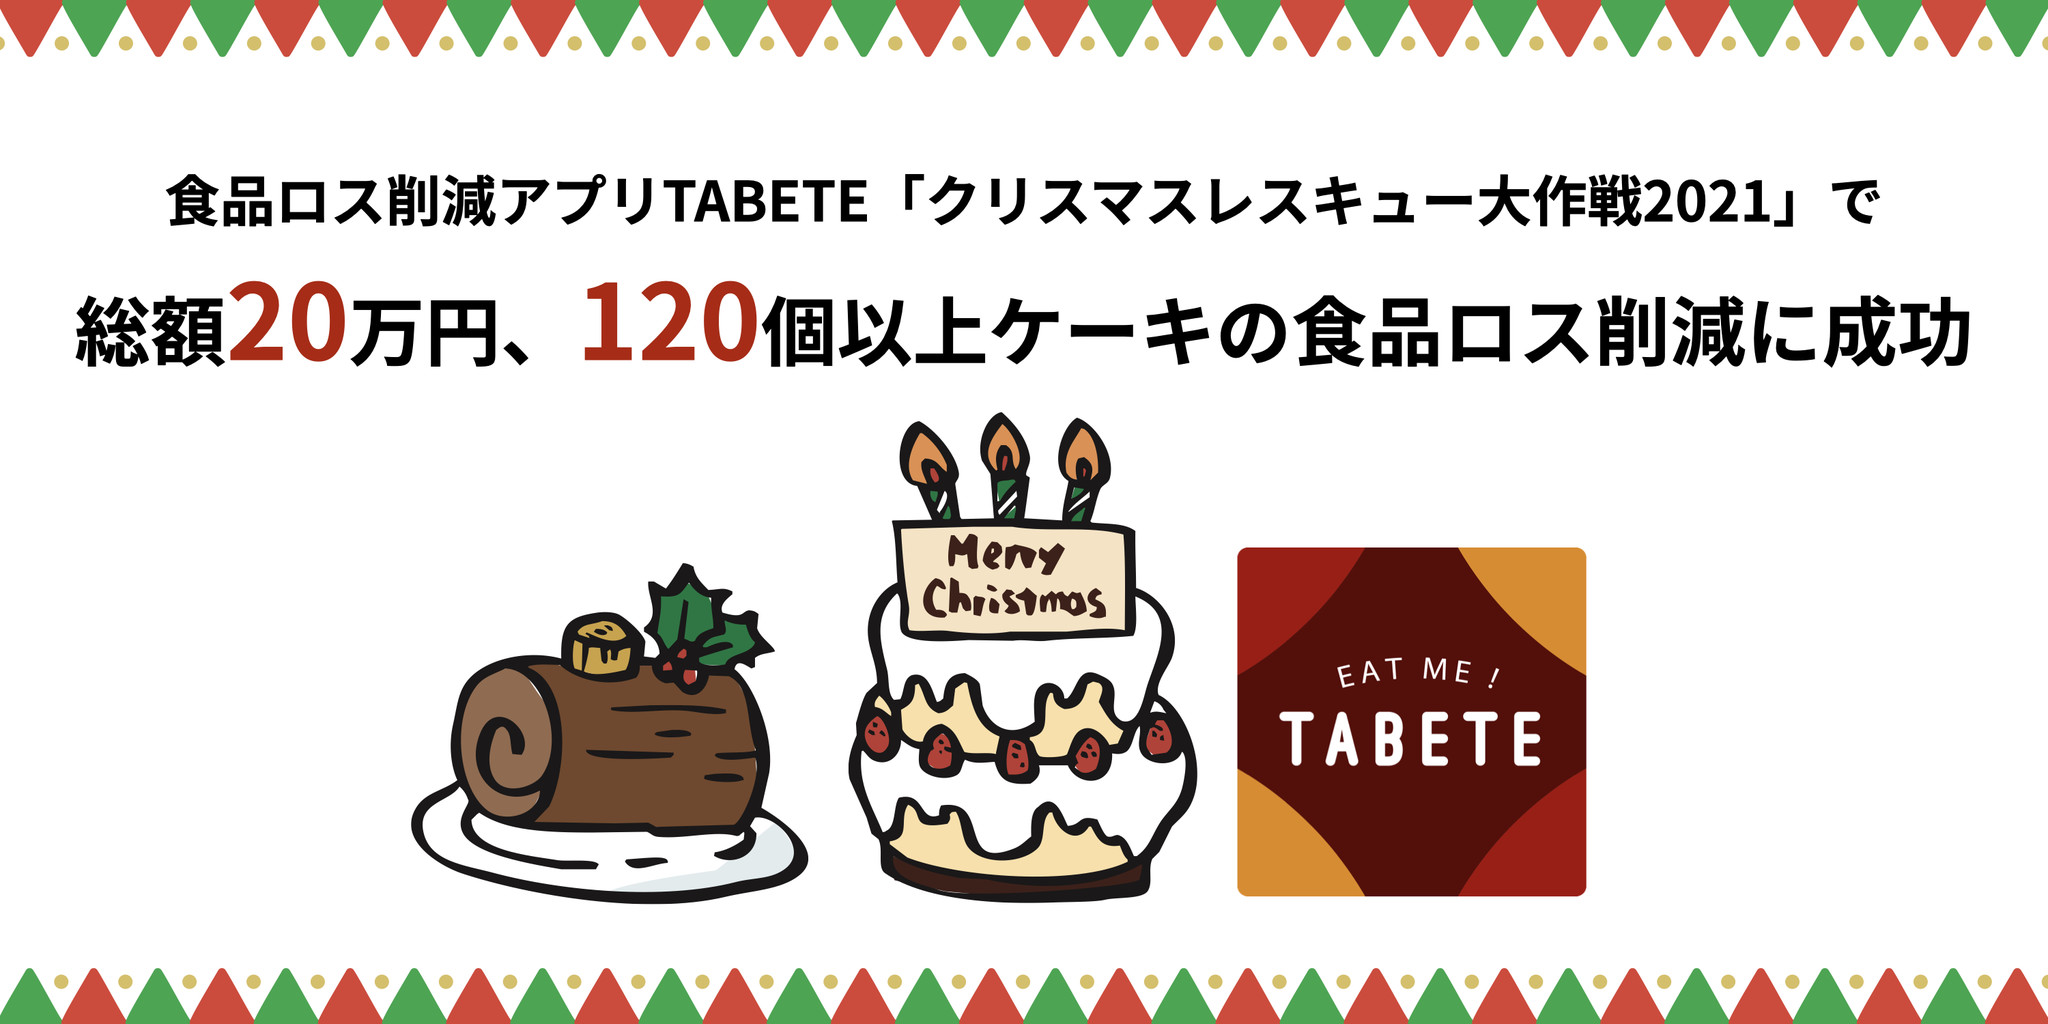 クリスマス後に発生したケーキ等の食品ロス、TABETEで削減に成功。25日からの5日間で総額20万円以上、120個以上のケーキの食品ロス削減を達成。